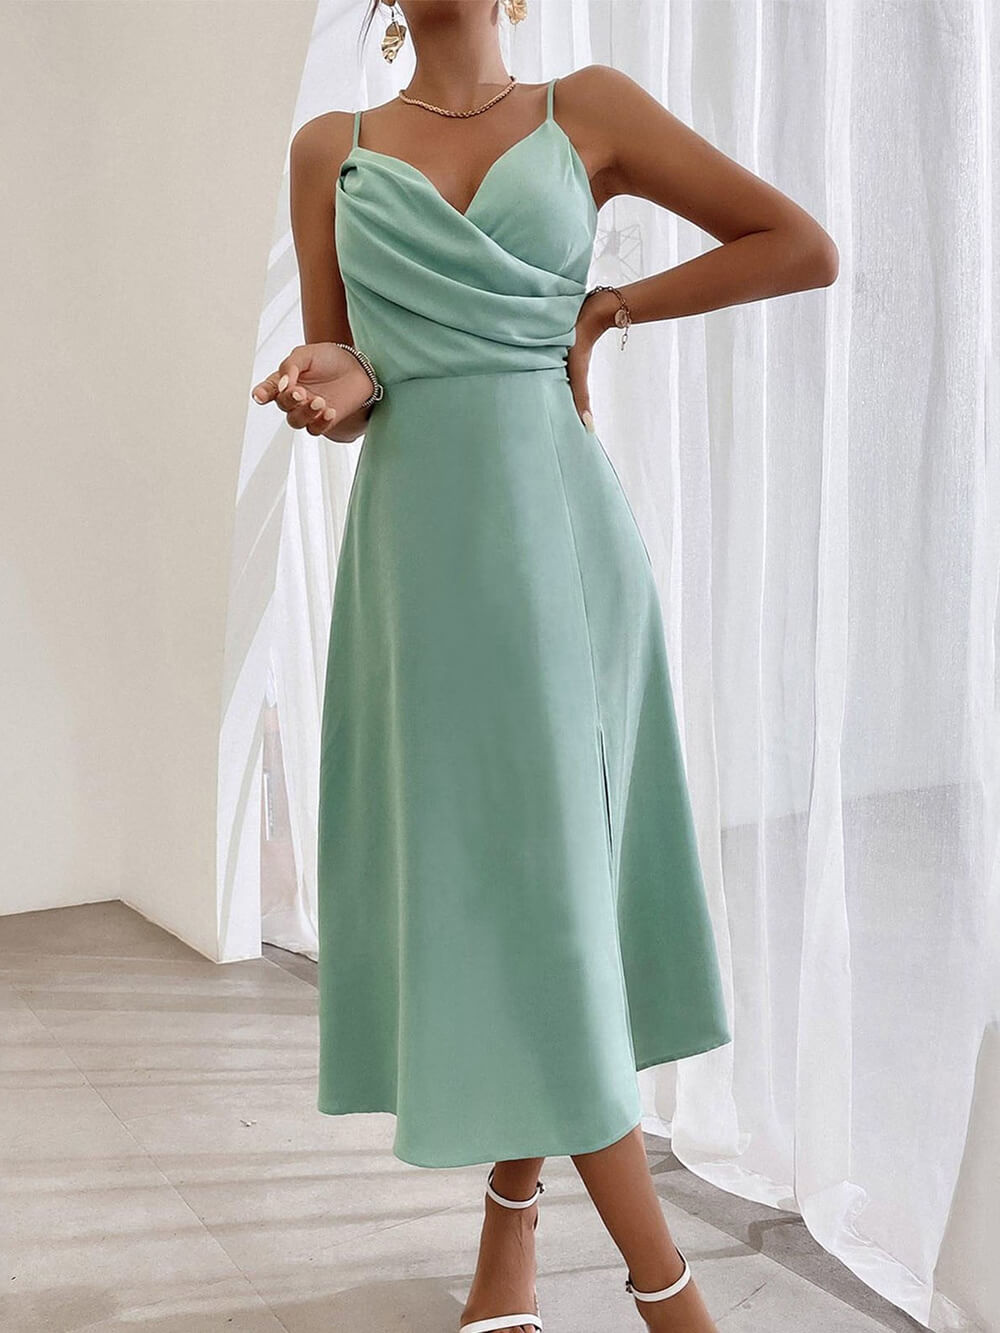 Κομψό φόρεμα με λουράκι Σπαγγέτι Πλισέ με σκίσιμο πόδι